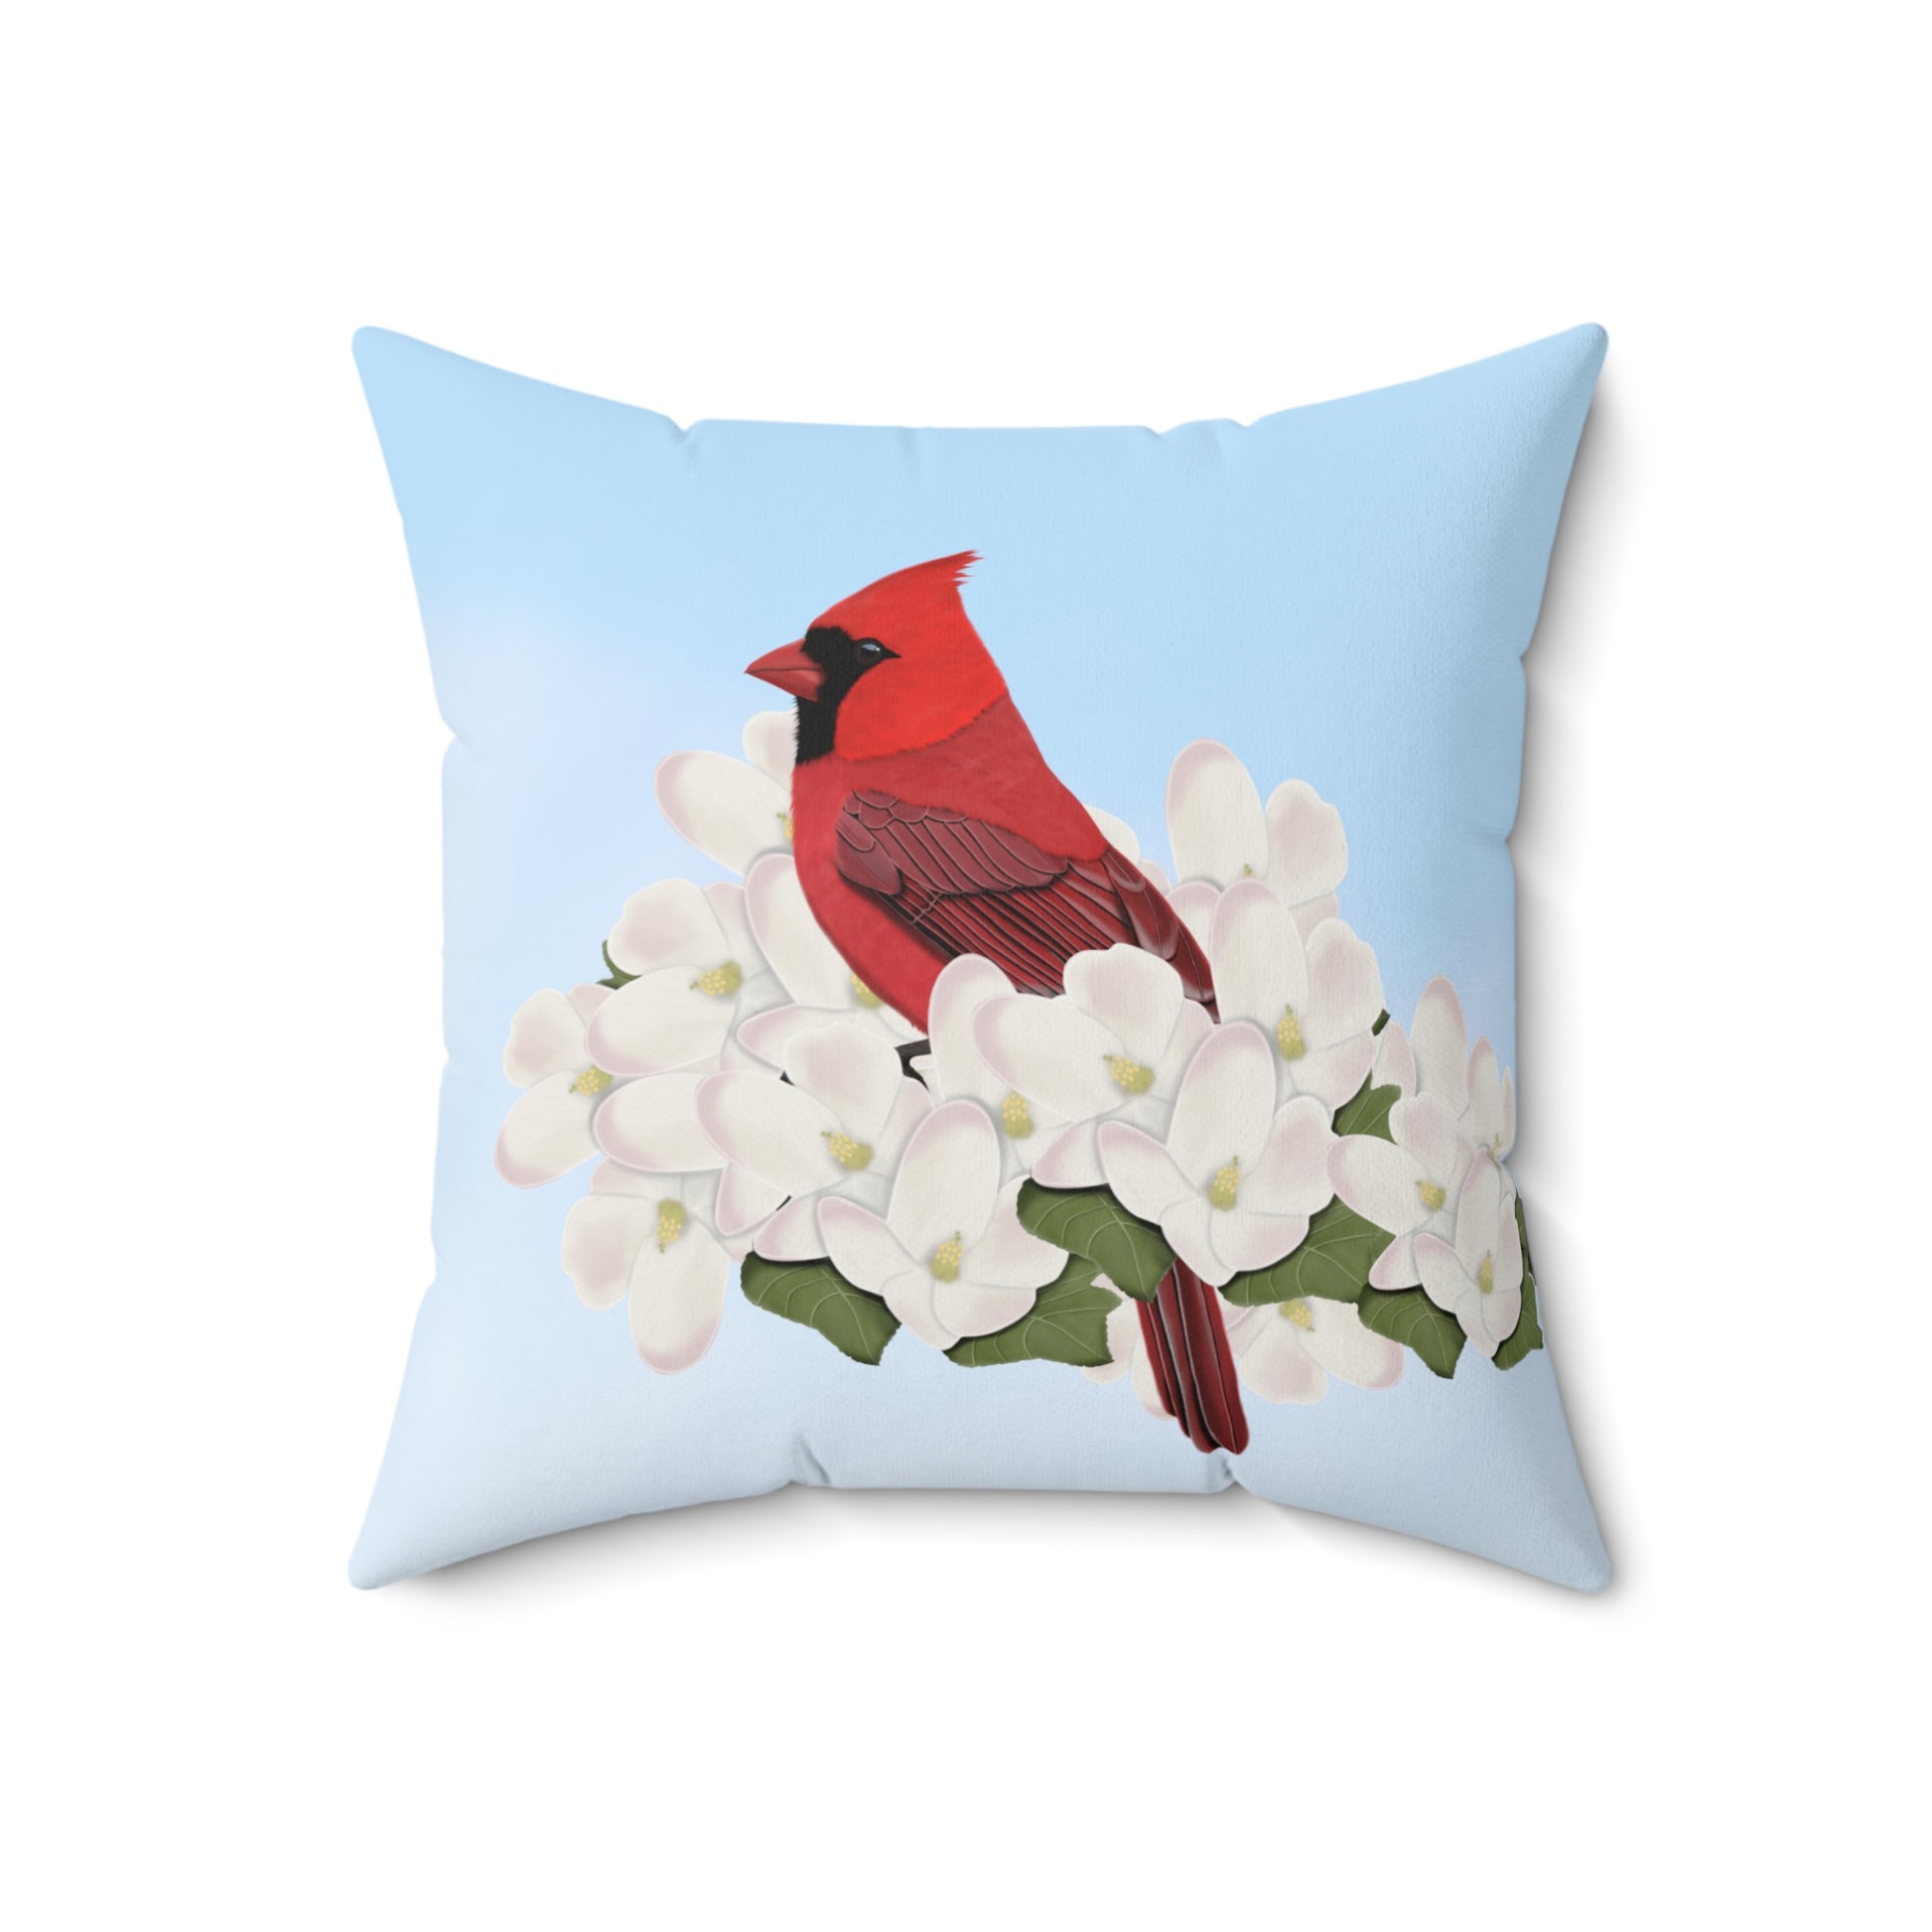 Cardinal and Apple Blossoms Bird Throw Pillow 18"x18"